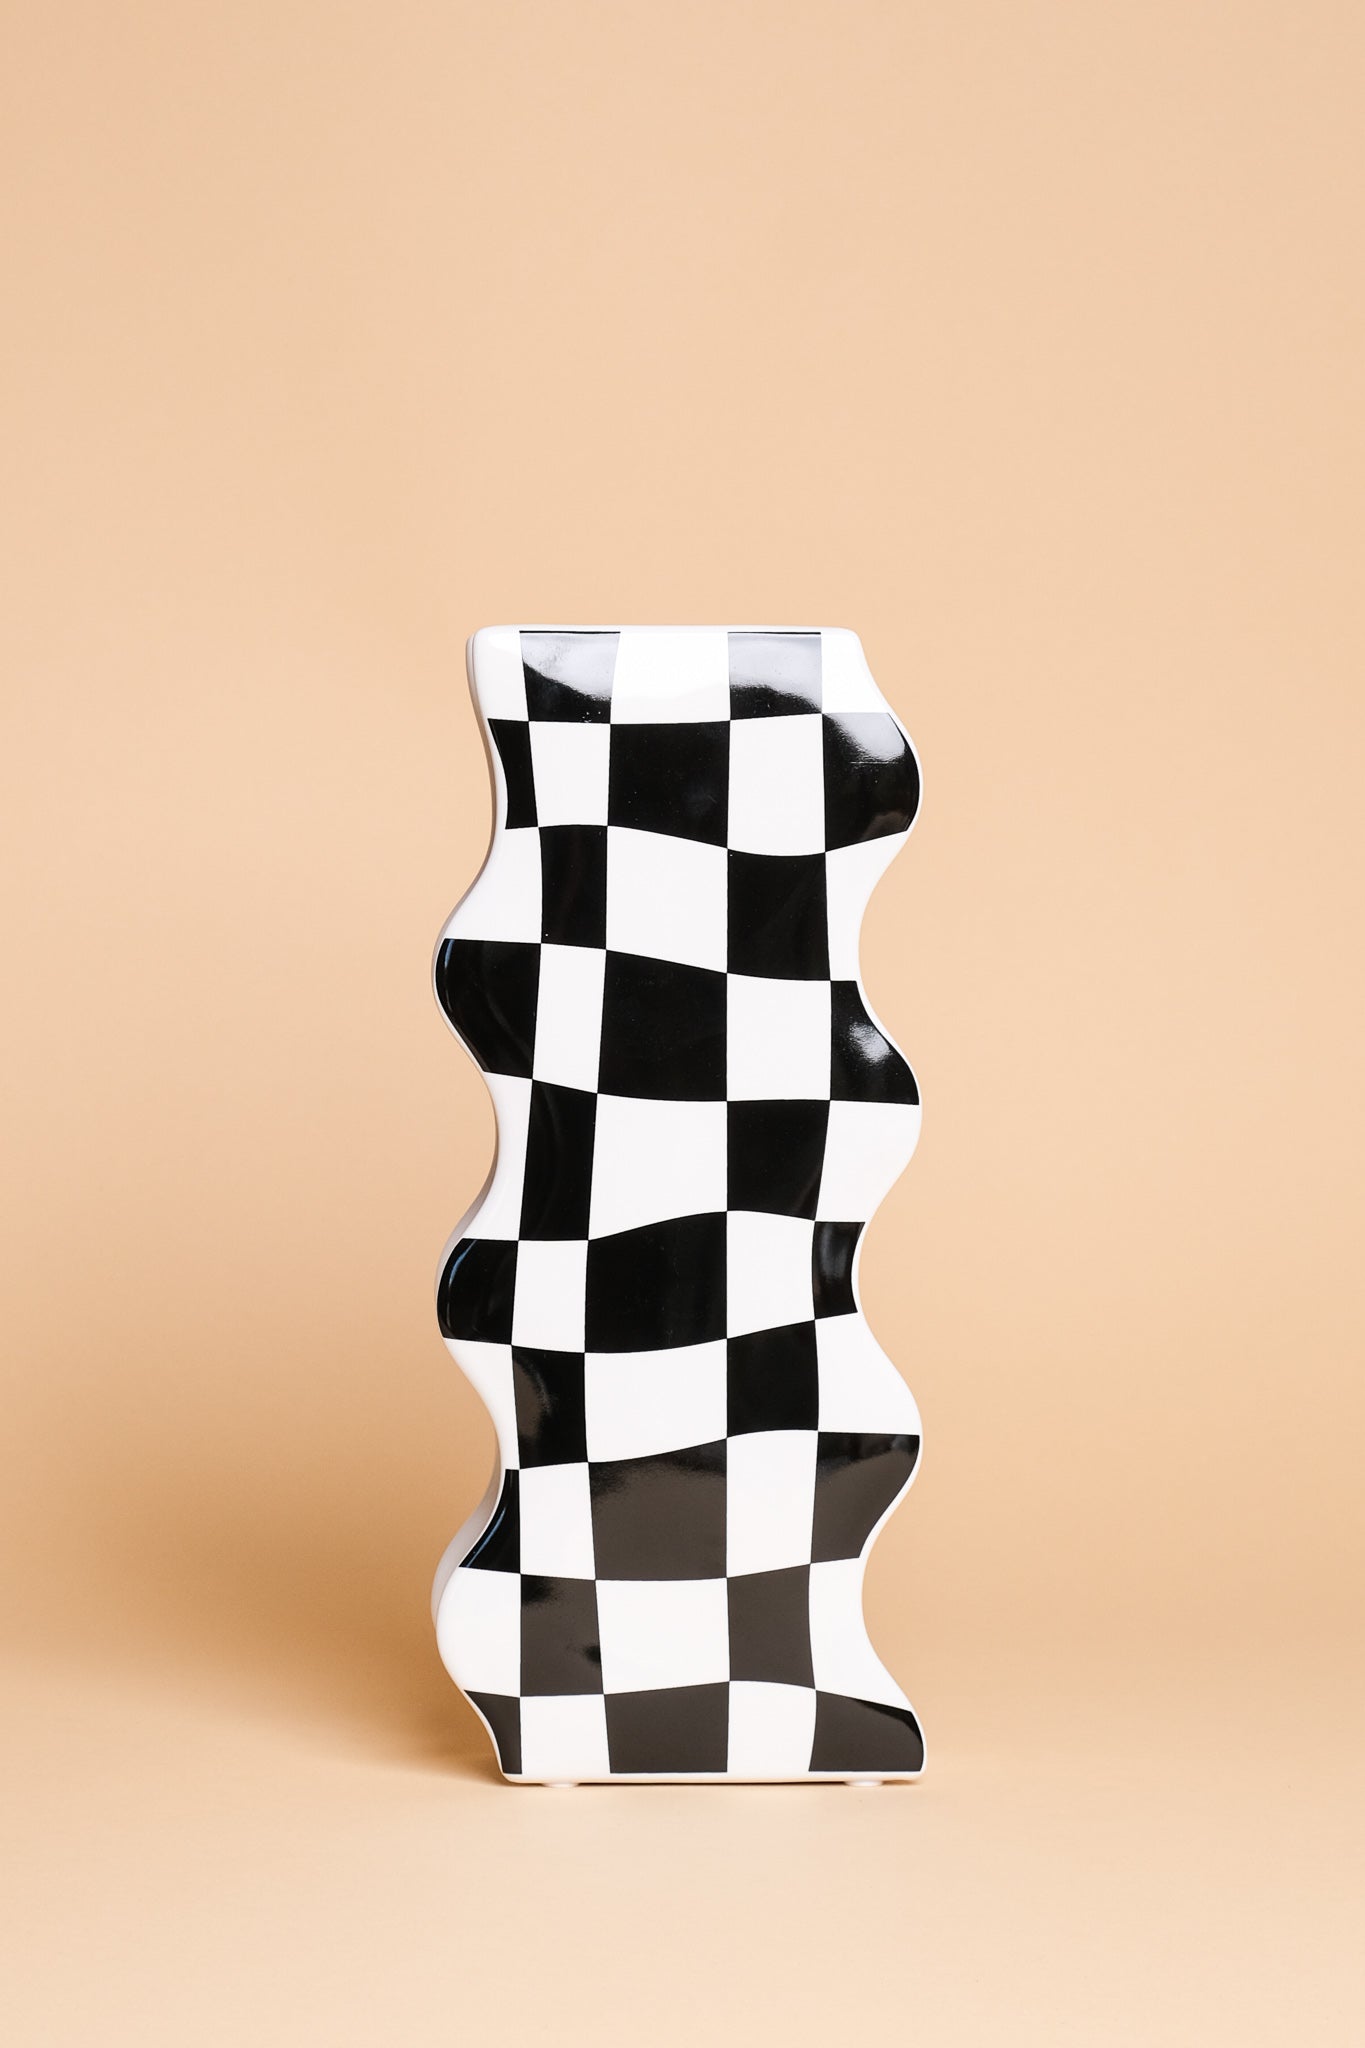 Wonky Chessboard Ceramic Vase